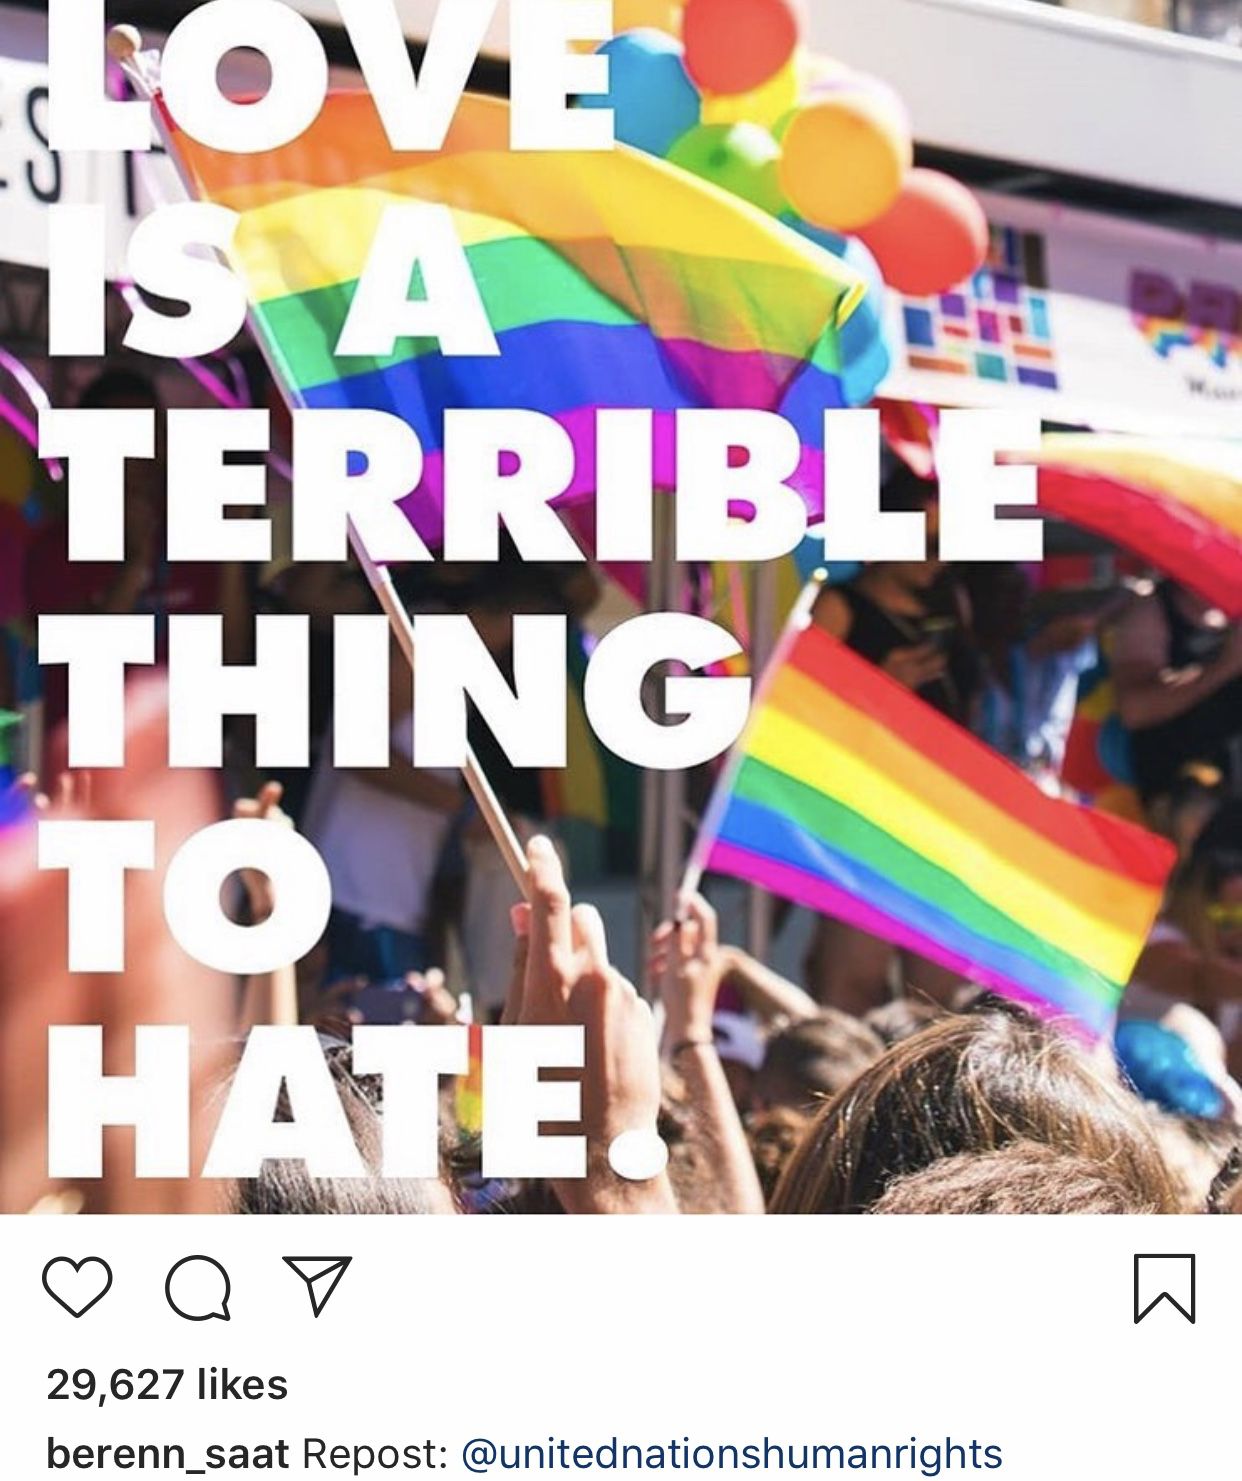 بيرين سات تدعم المثليين